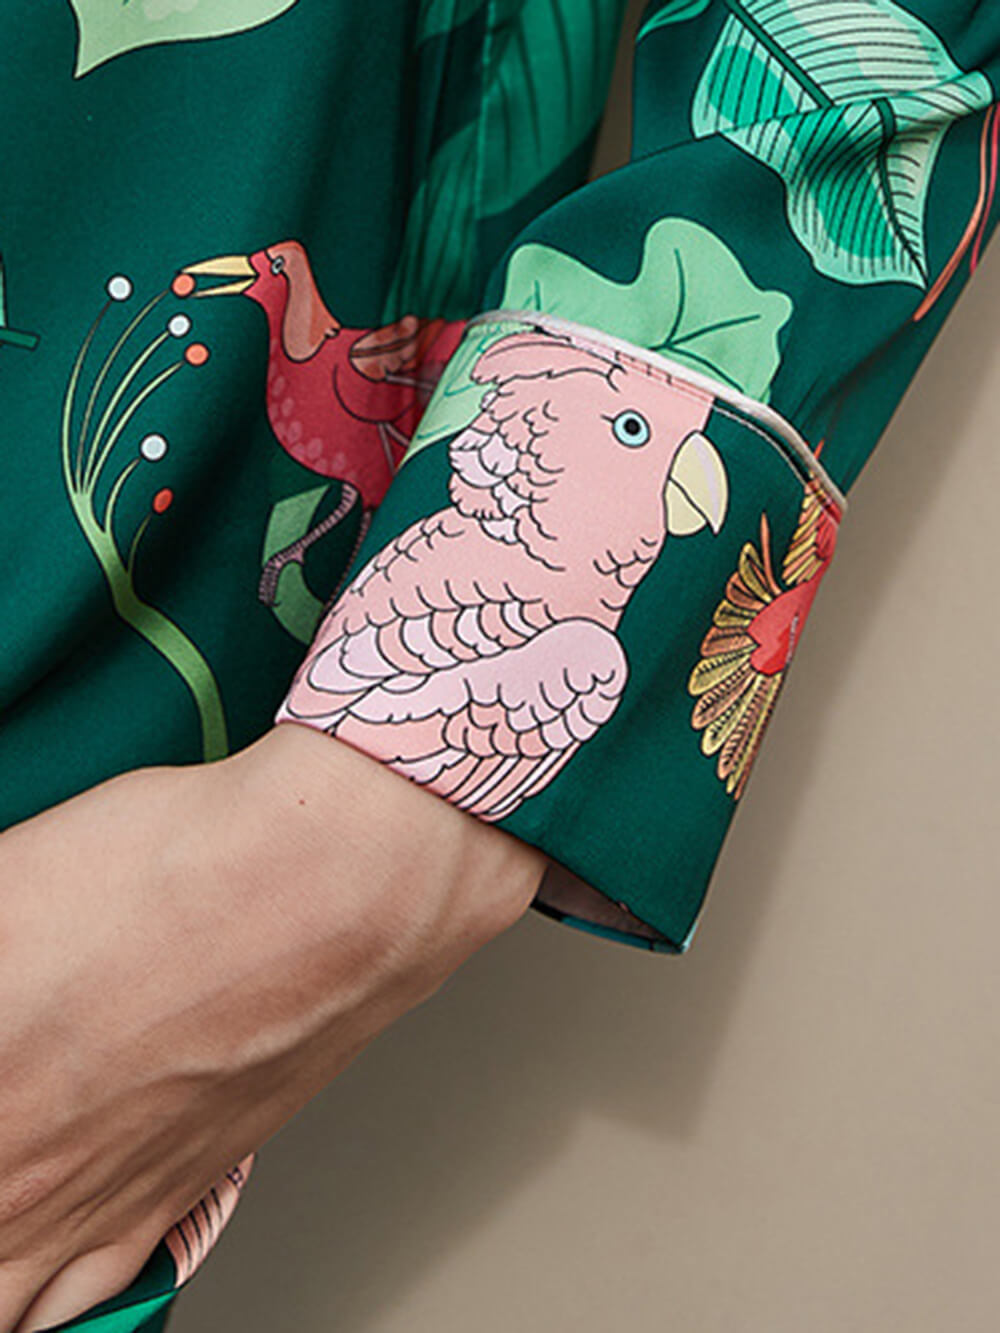 Conjunto de pijama de seda com estampa de papagaio verde